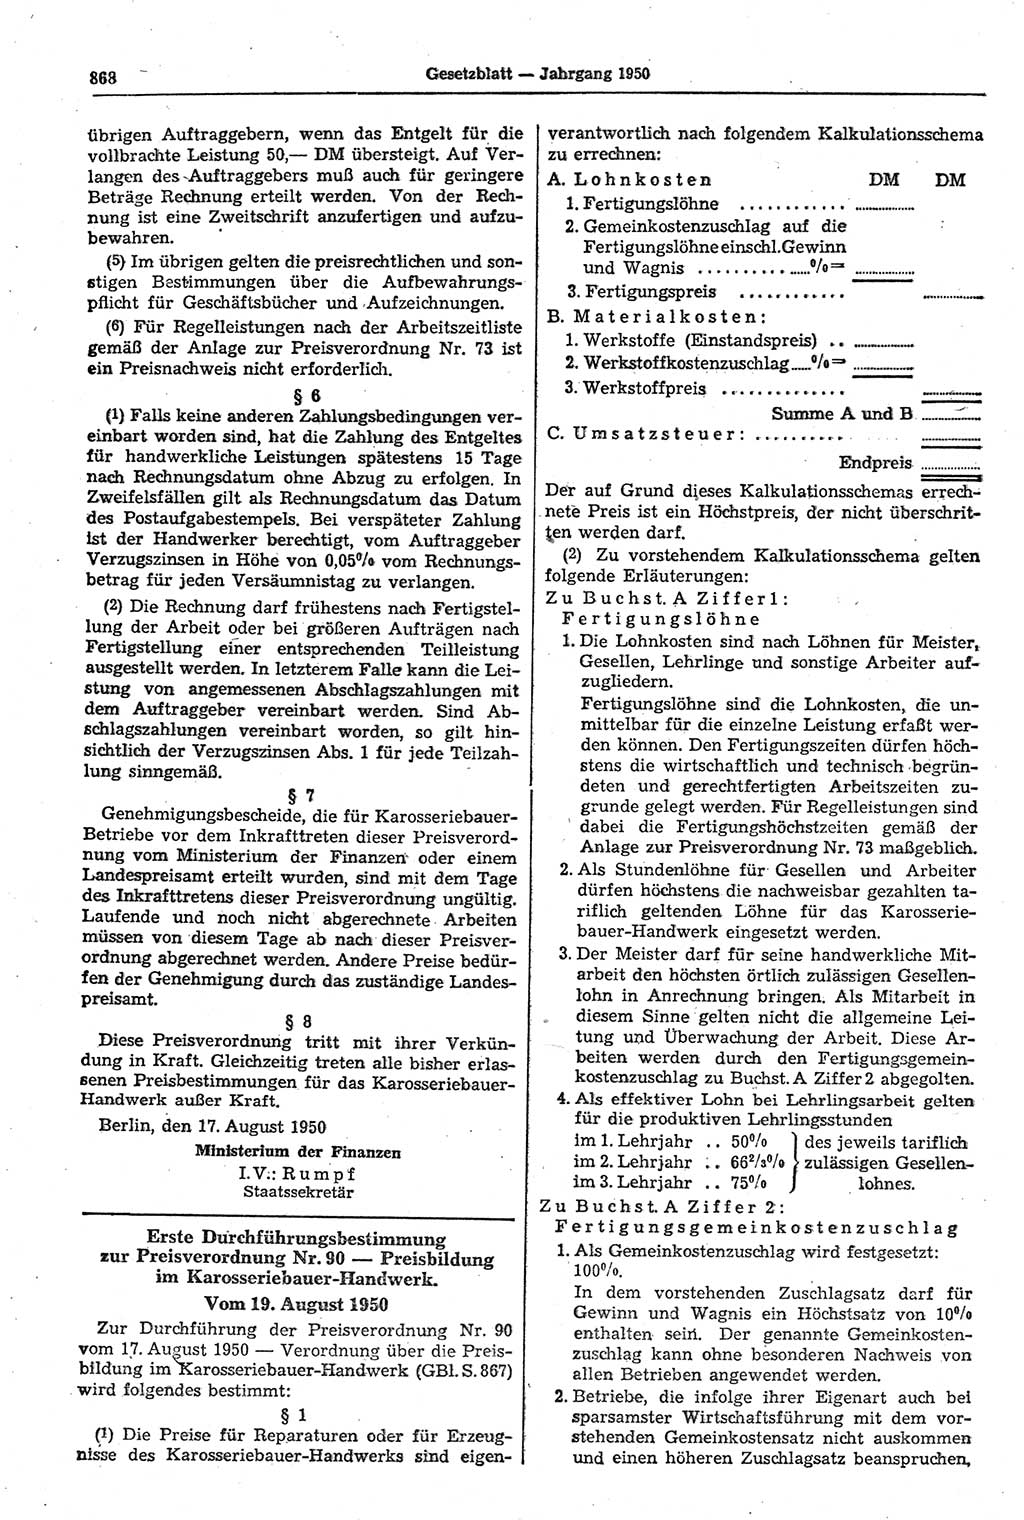 Gesetzblatt (GBl.) der Deutschen Demokratischen Republik (DDR) 1950, Seite 868 (GBl. DDR 1950, S. 868)